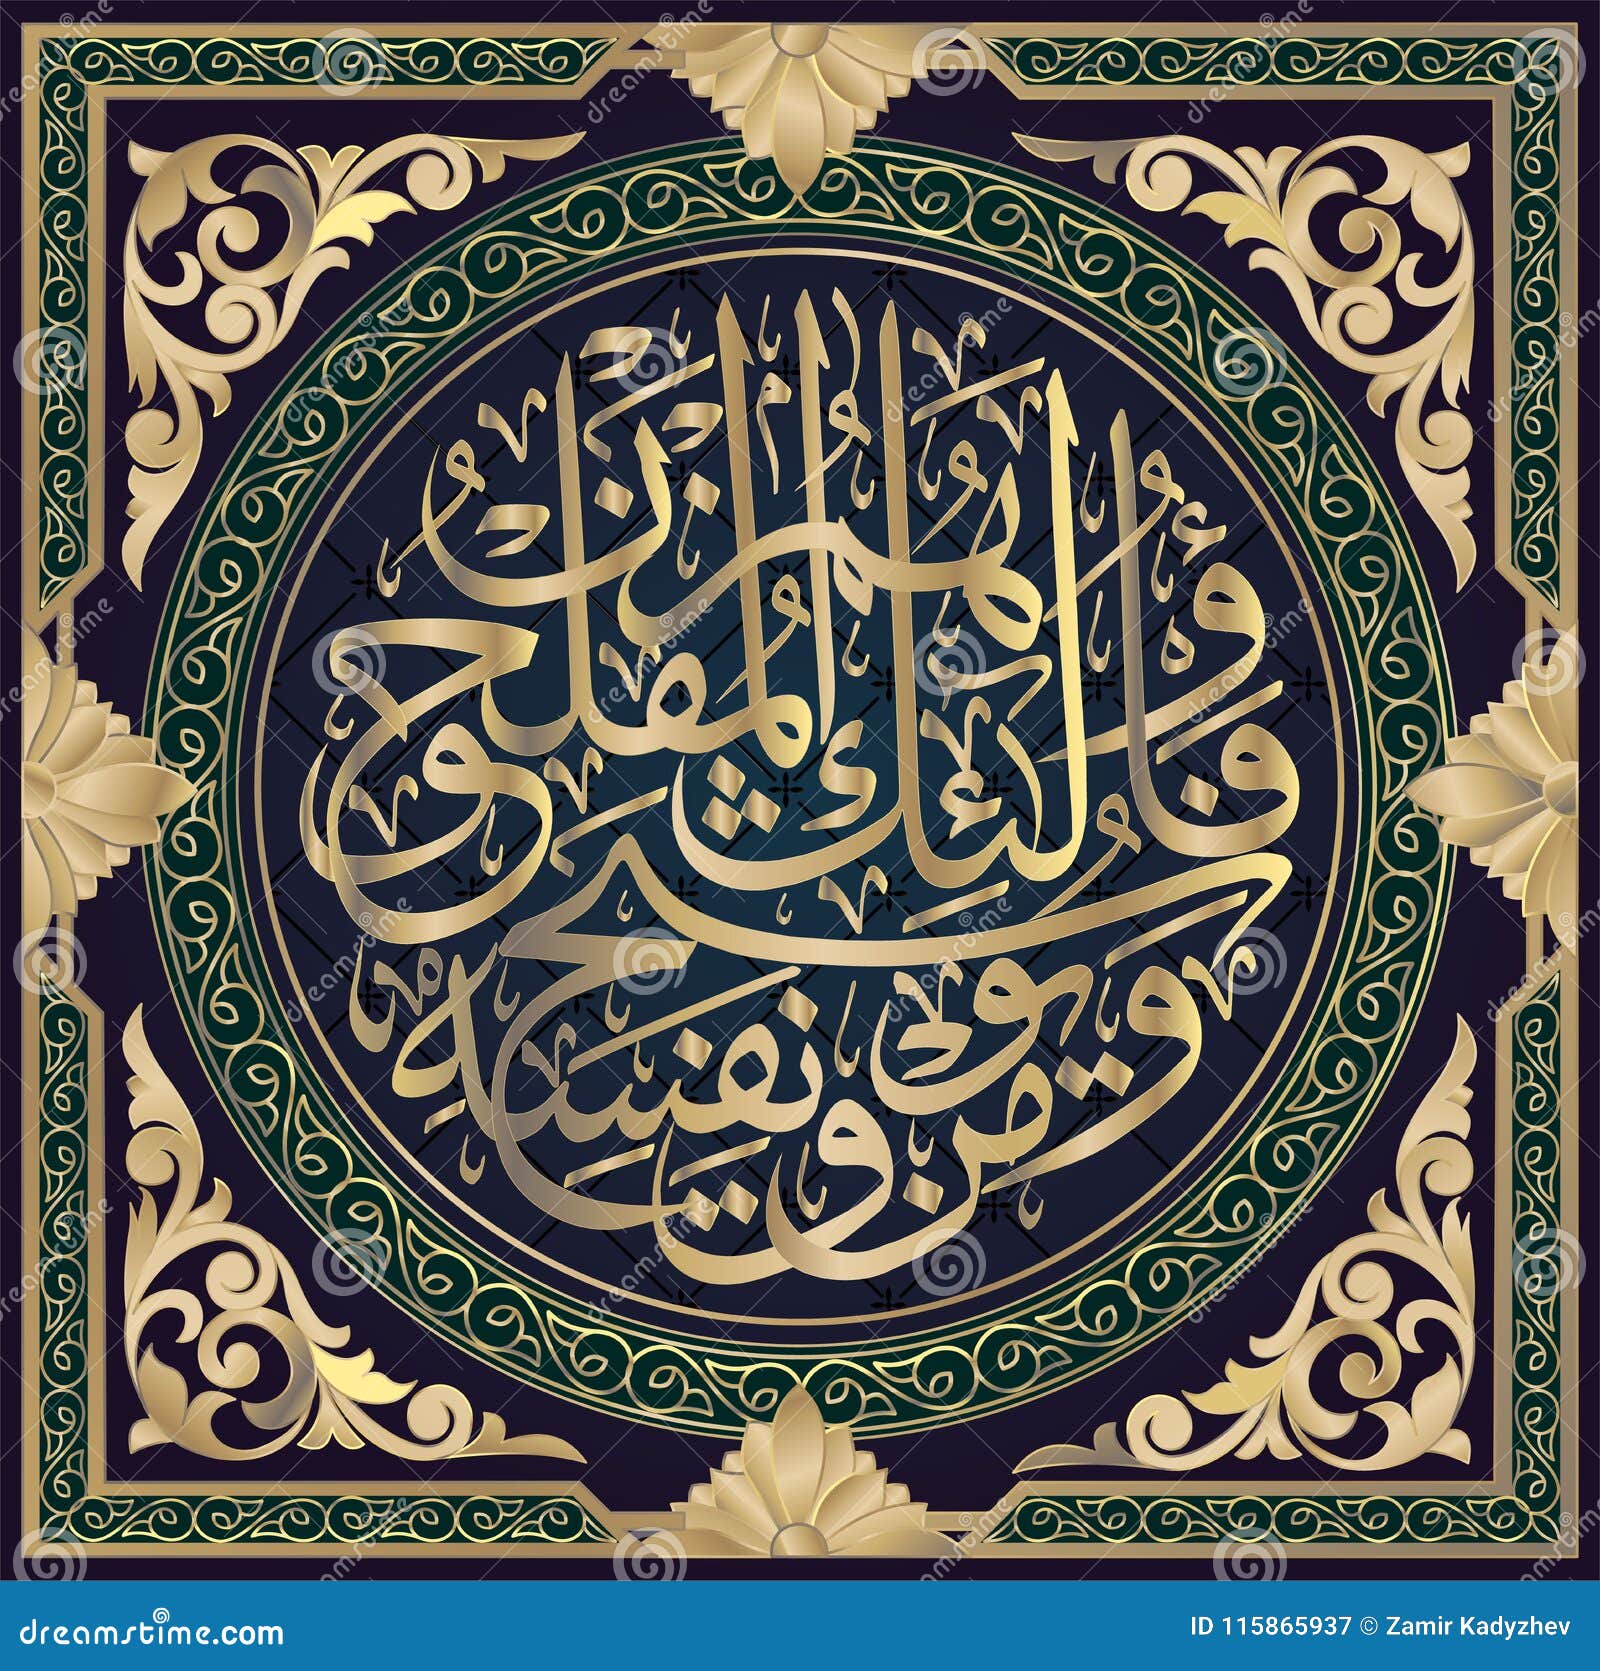 Islamische Kalligraphie Vom Koran Surahal Ctaghibun 64 Vers 16 Vektor